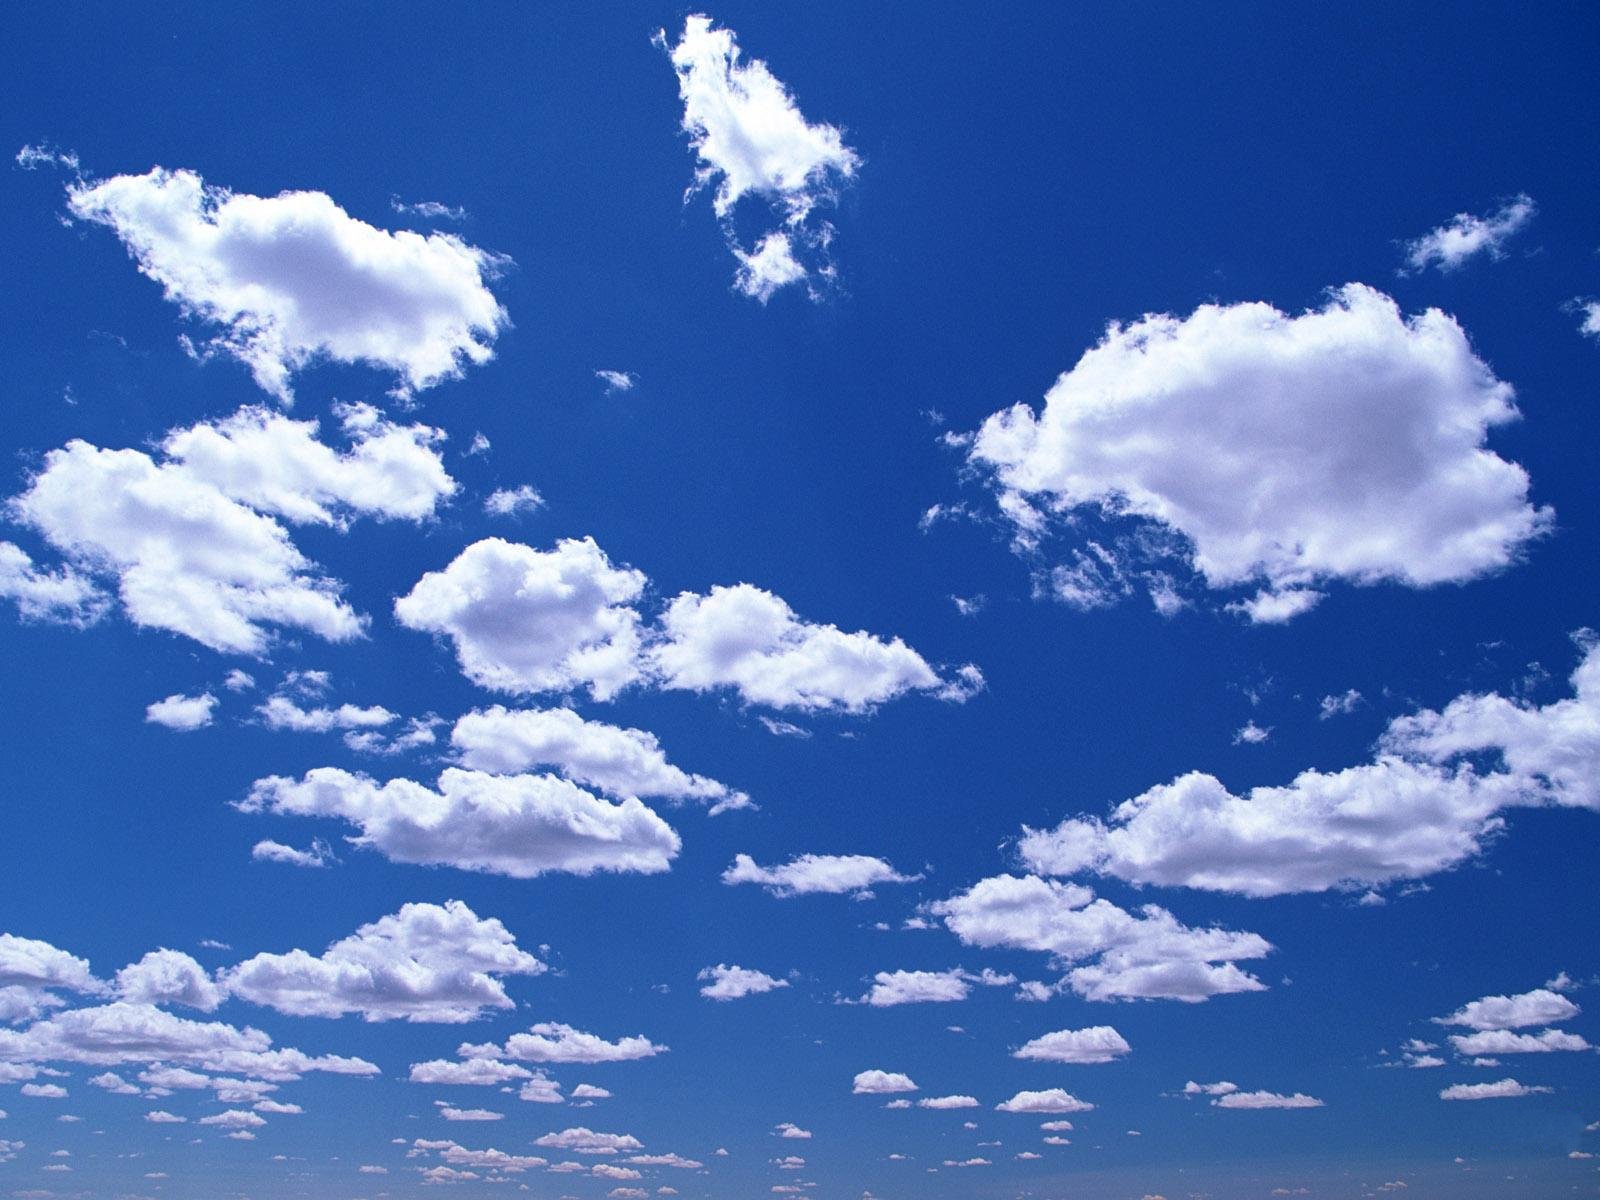 Hình nền bầu trời đầy mây HD khiến cho bầu trời trở nên sống động và đẹp mắt. Tại trang web của chúng tôi, bạn có thể tải về những bức hình nền bầu trời đầy mây HD tuyệt đẹp nhất. Trải nghiệm sự tinh tế và quyến rũ với những cảnh tuyệt đẹp của bầu trời.